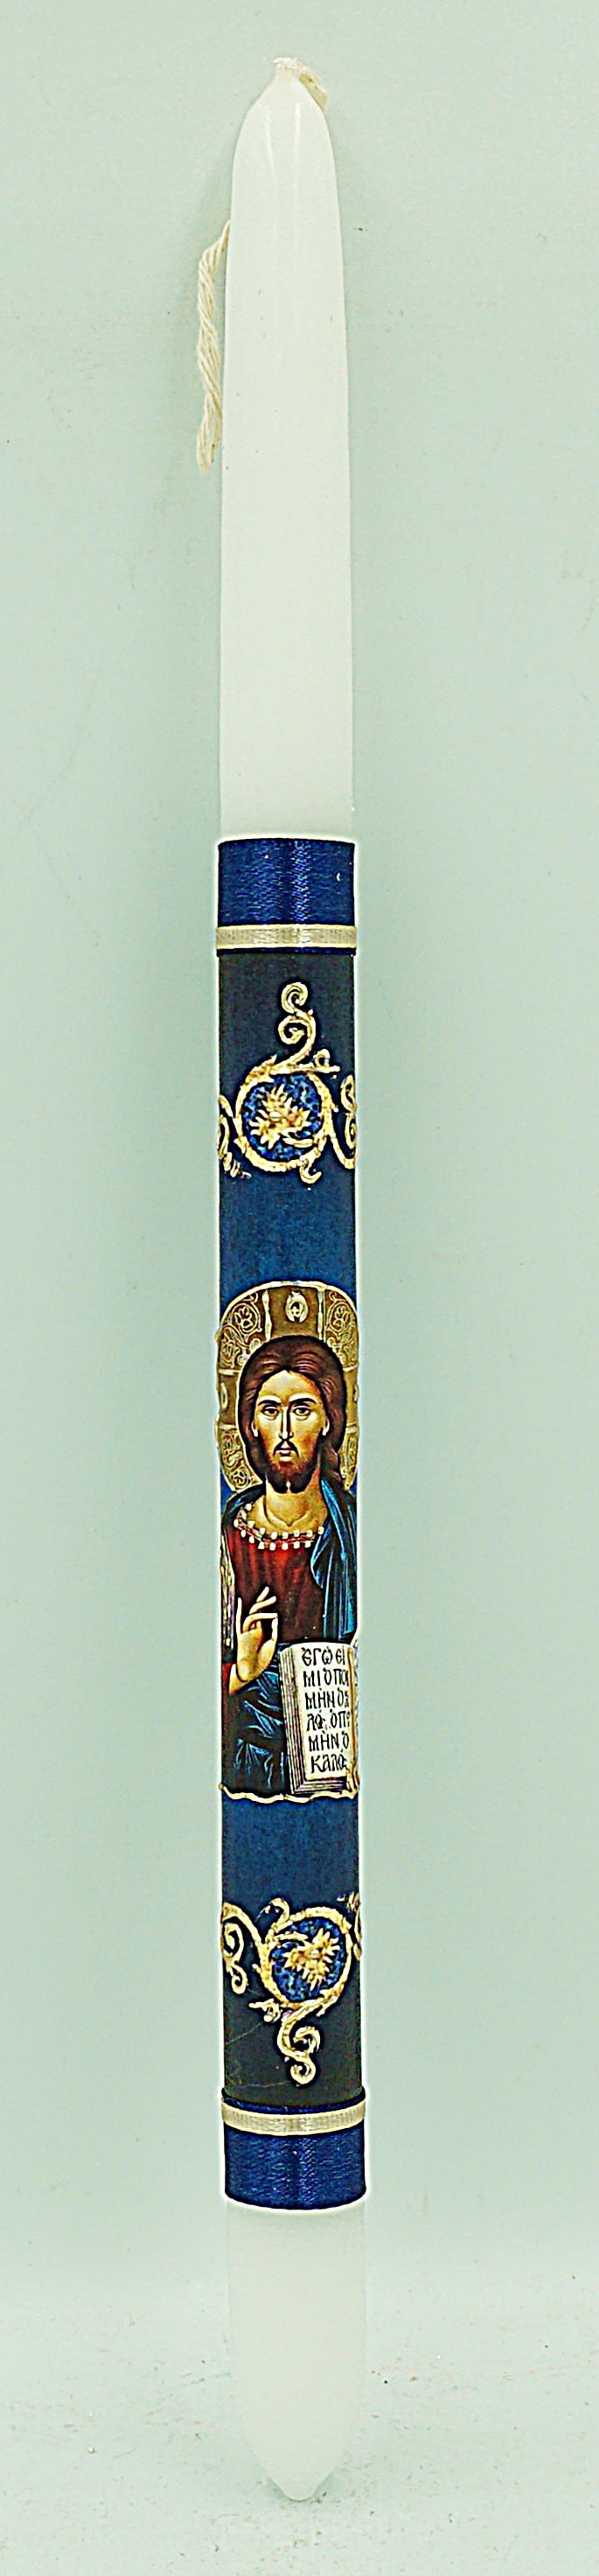 Πασχαλινή Λαμπάδα με Εικονα του Χριστού Ευλογών 40εκ.